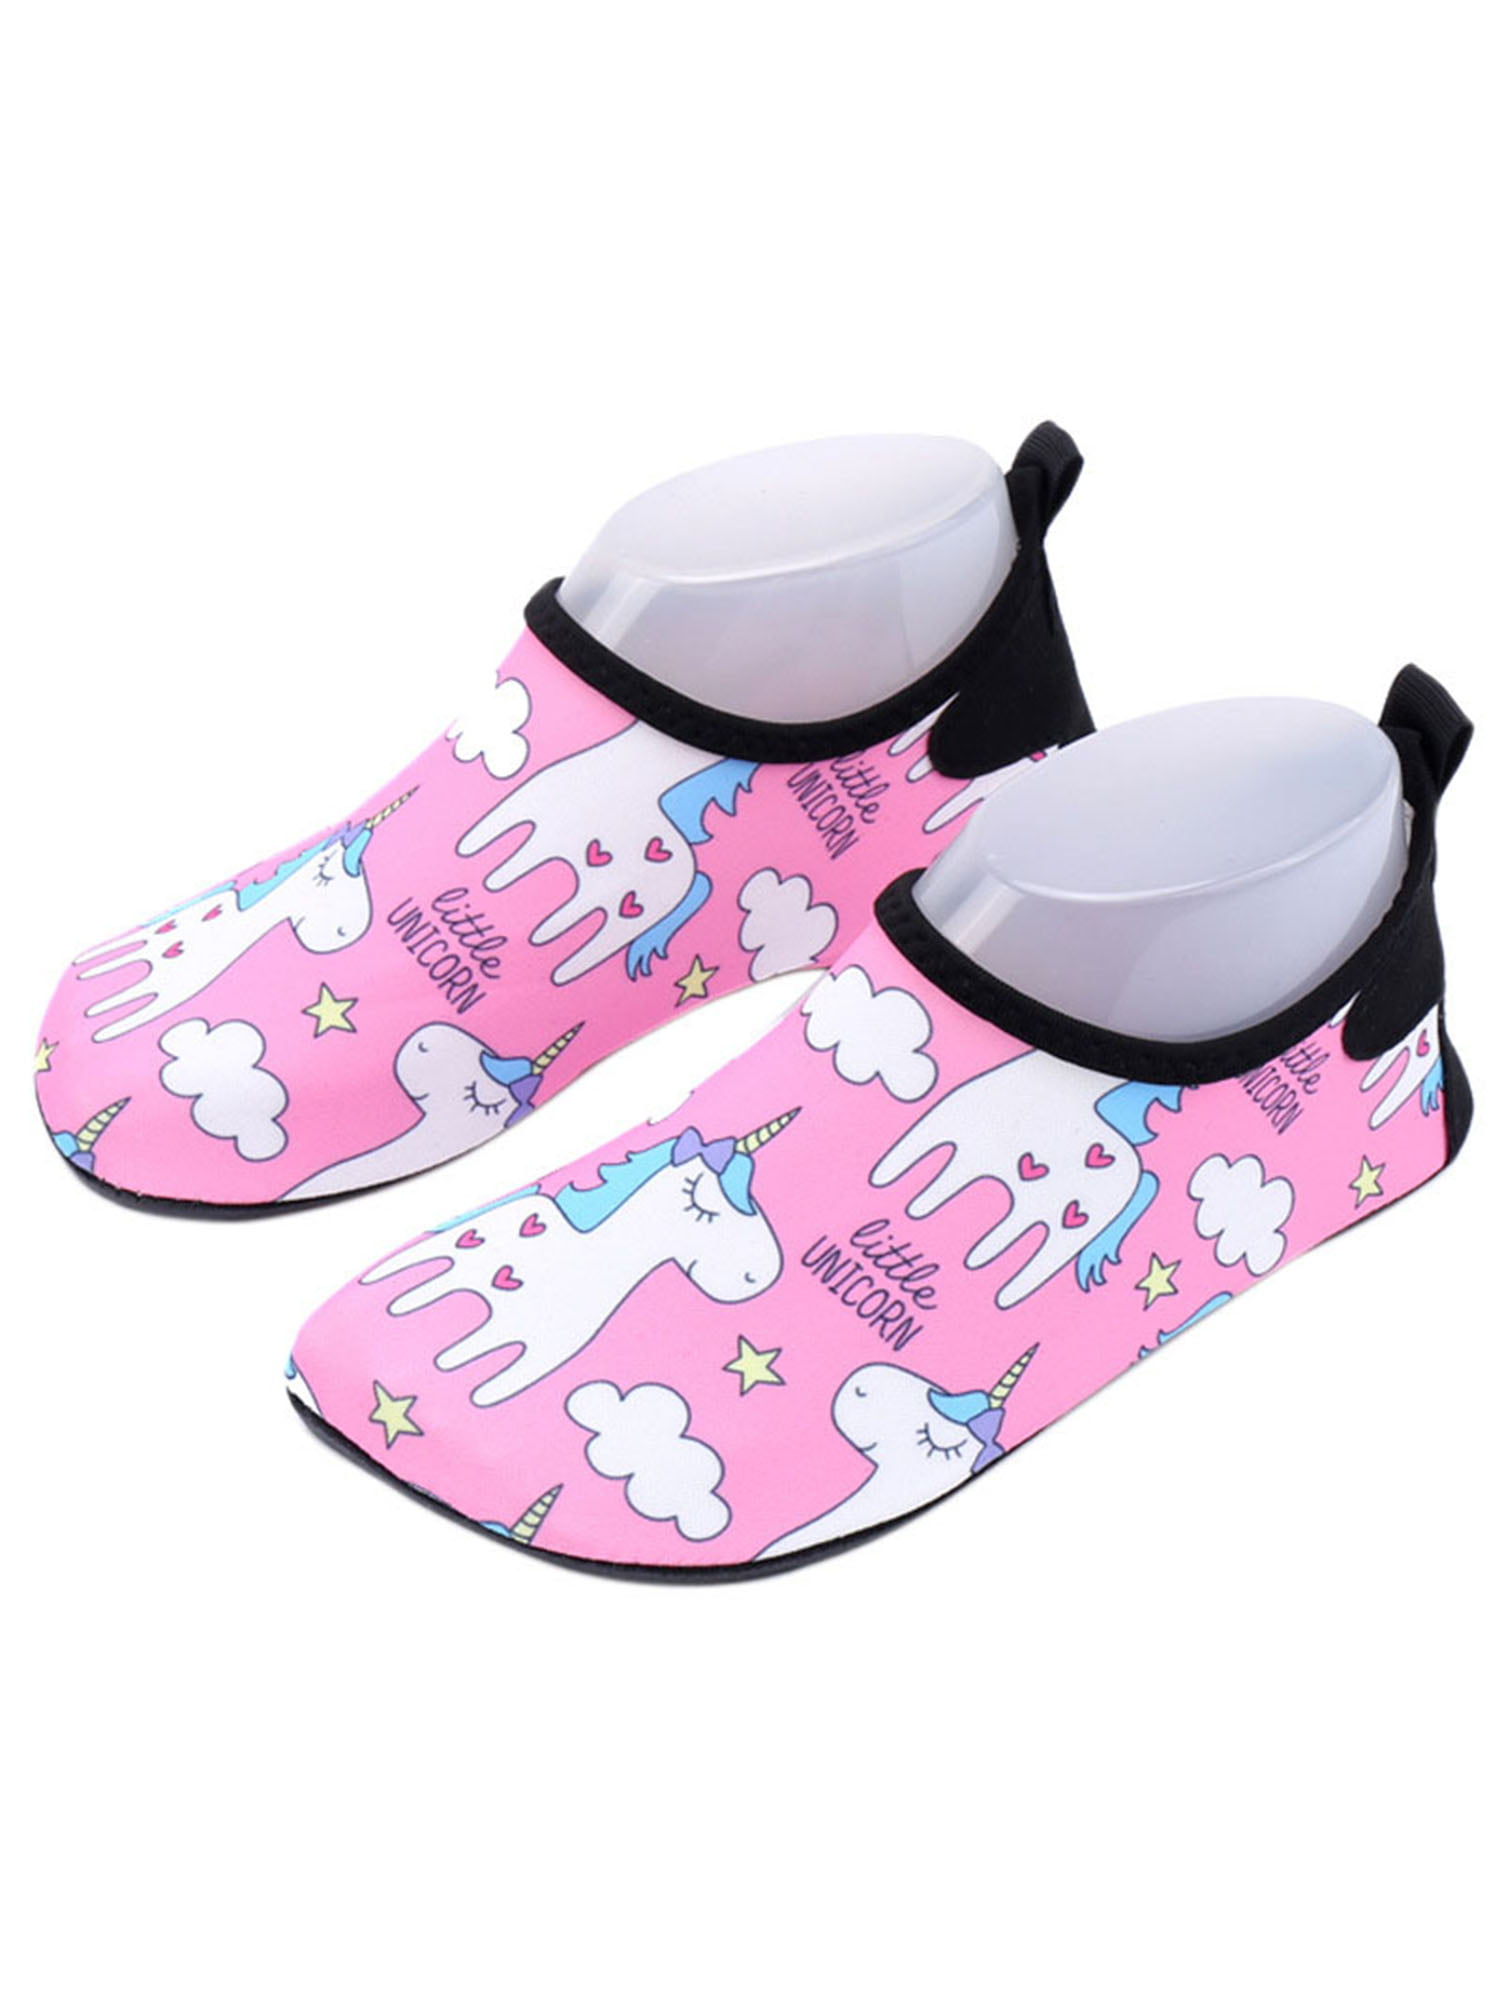 VIFUUR Baby Boys Girls Water Shoes Barefoot Aqua Socks for Beach Pool Indoor Play 